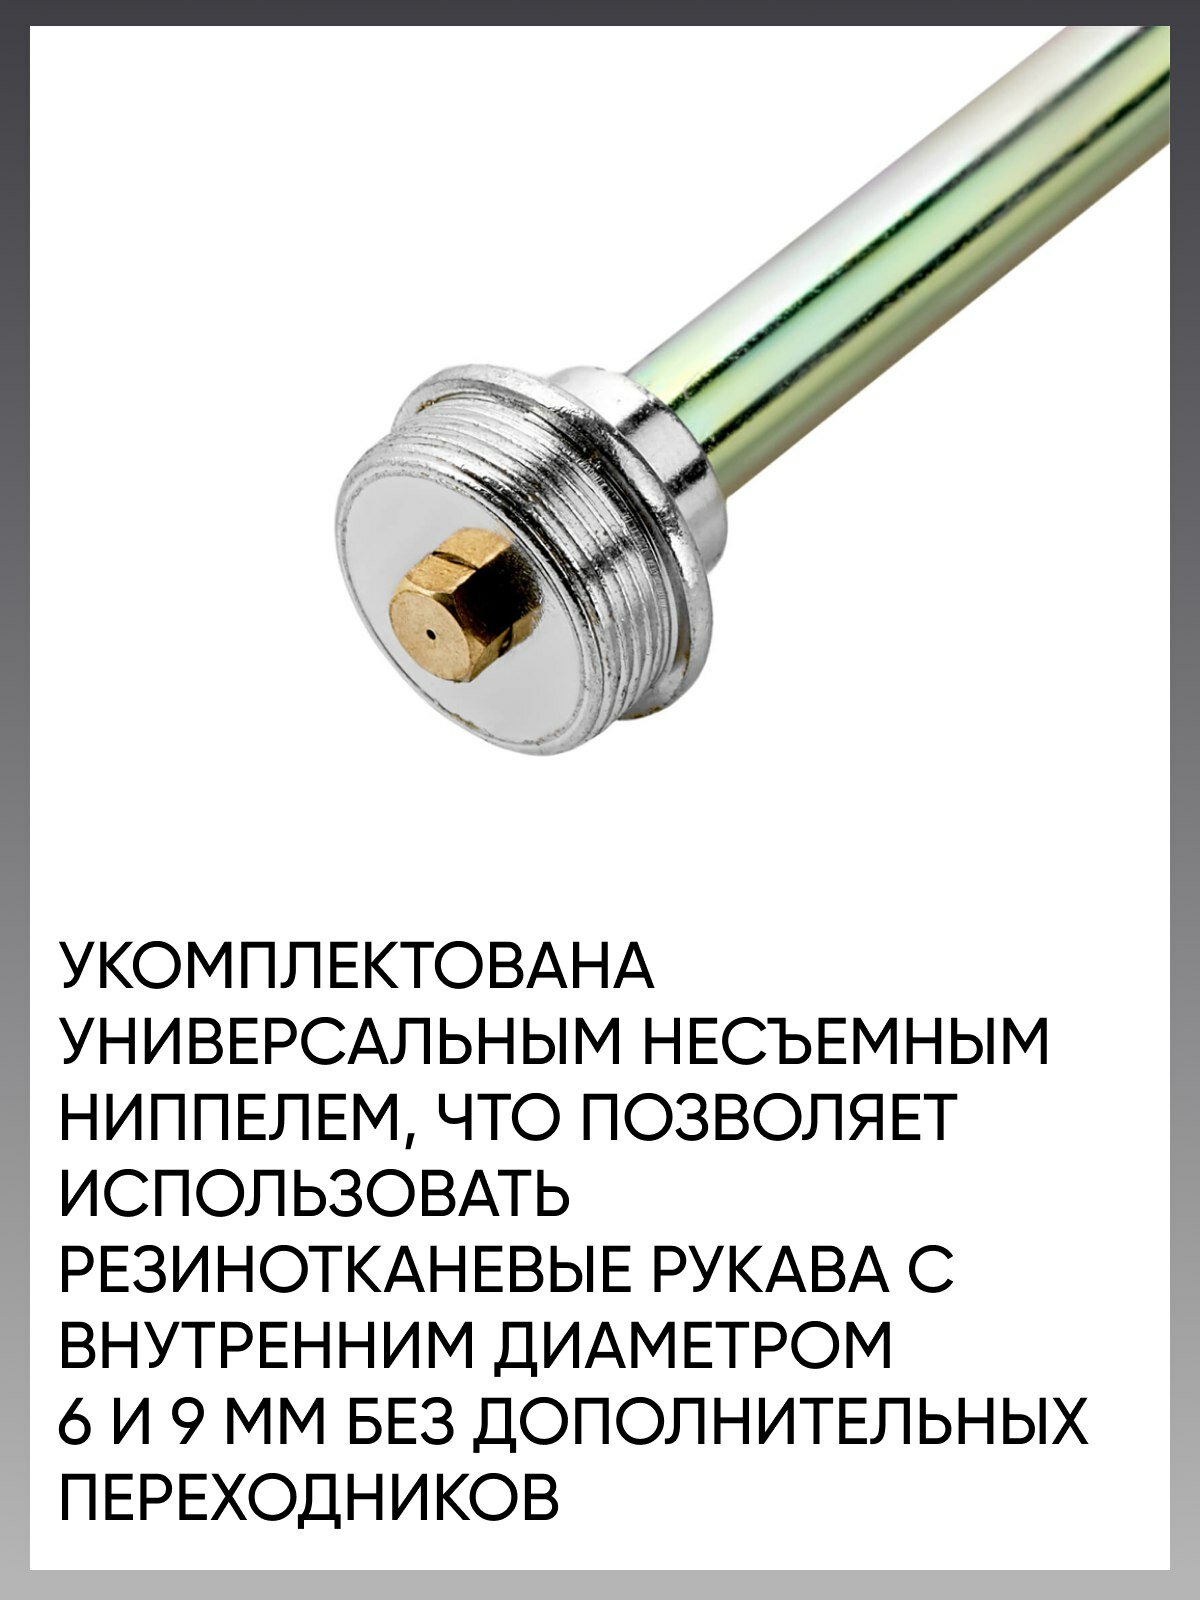 Горелка пропановая ПТК ГВ-100-P